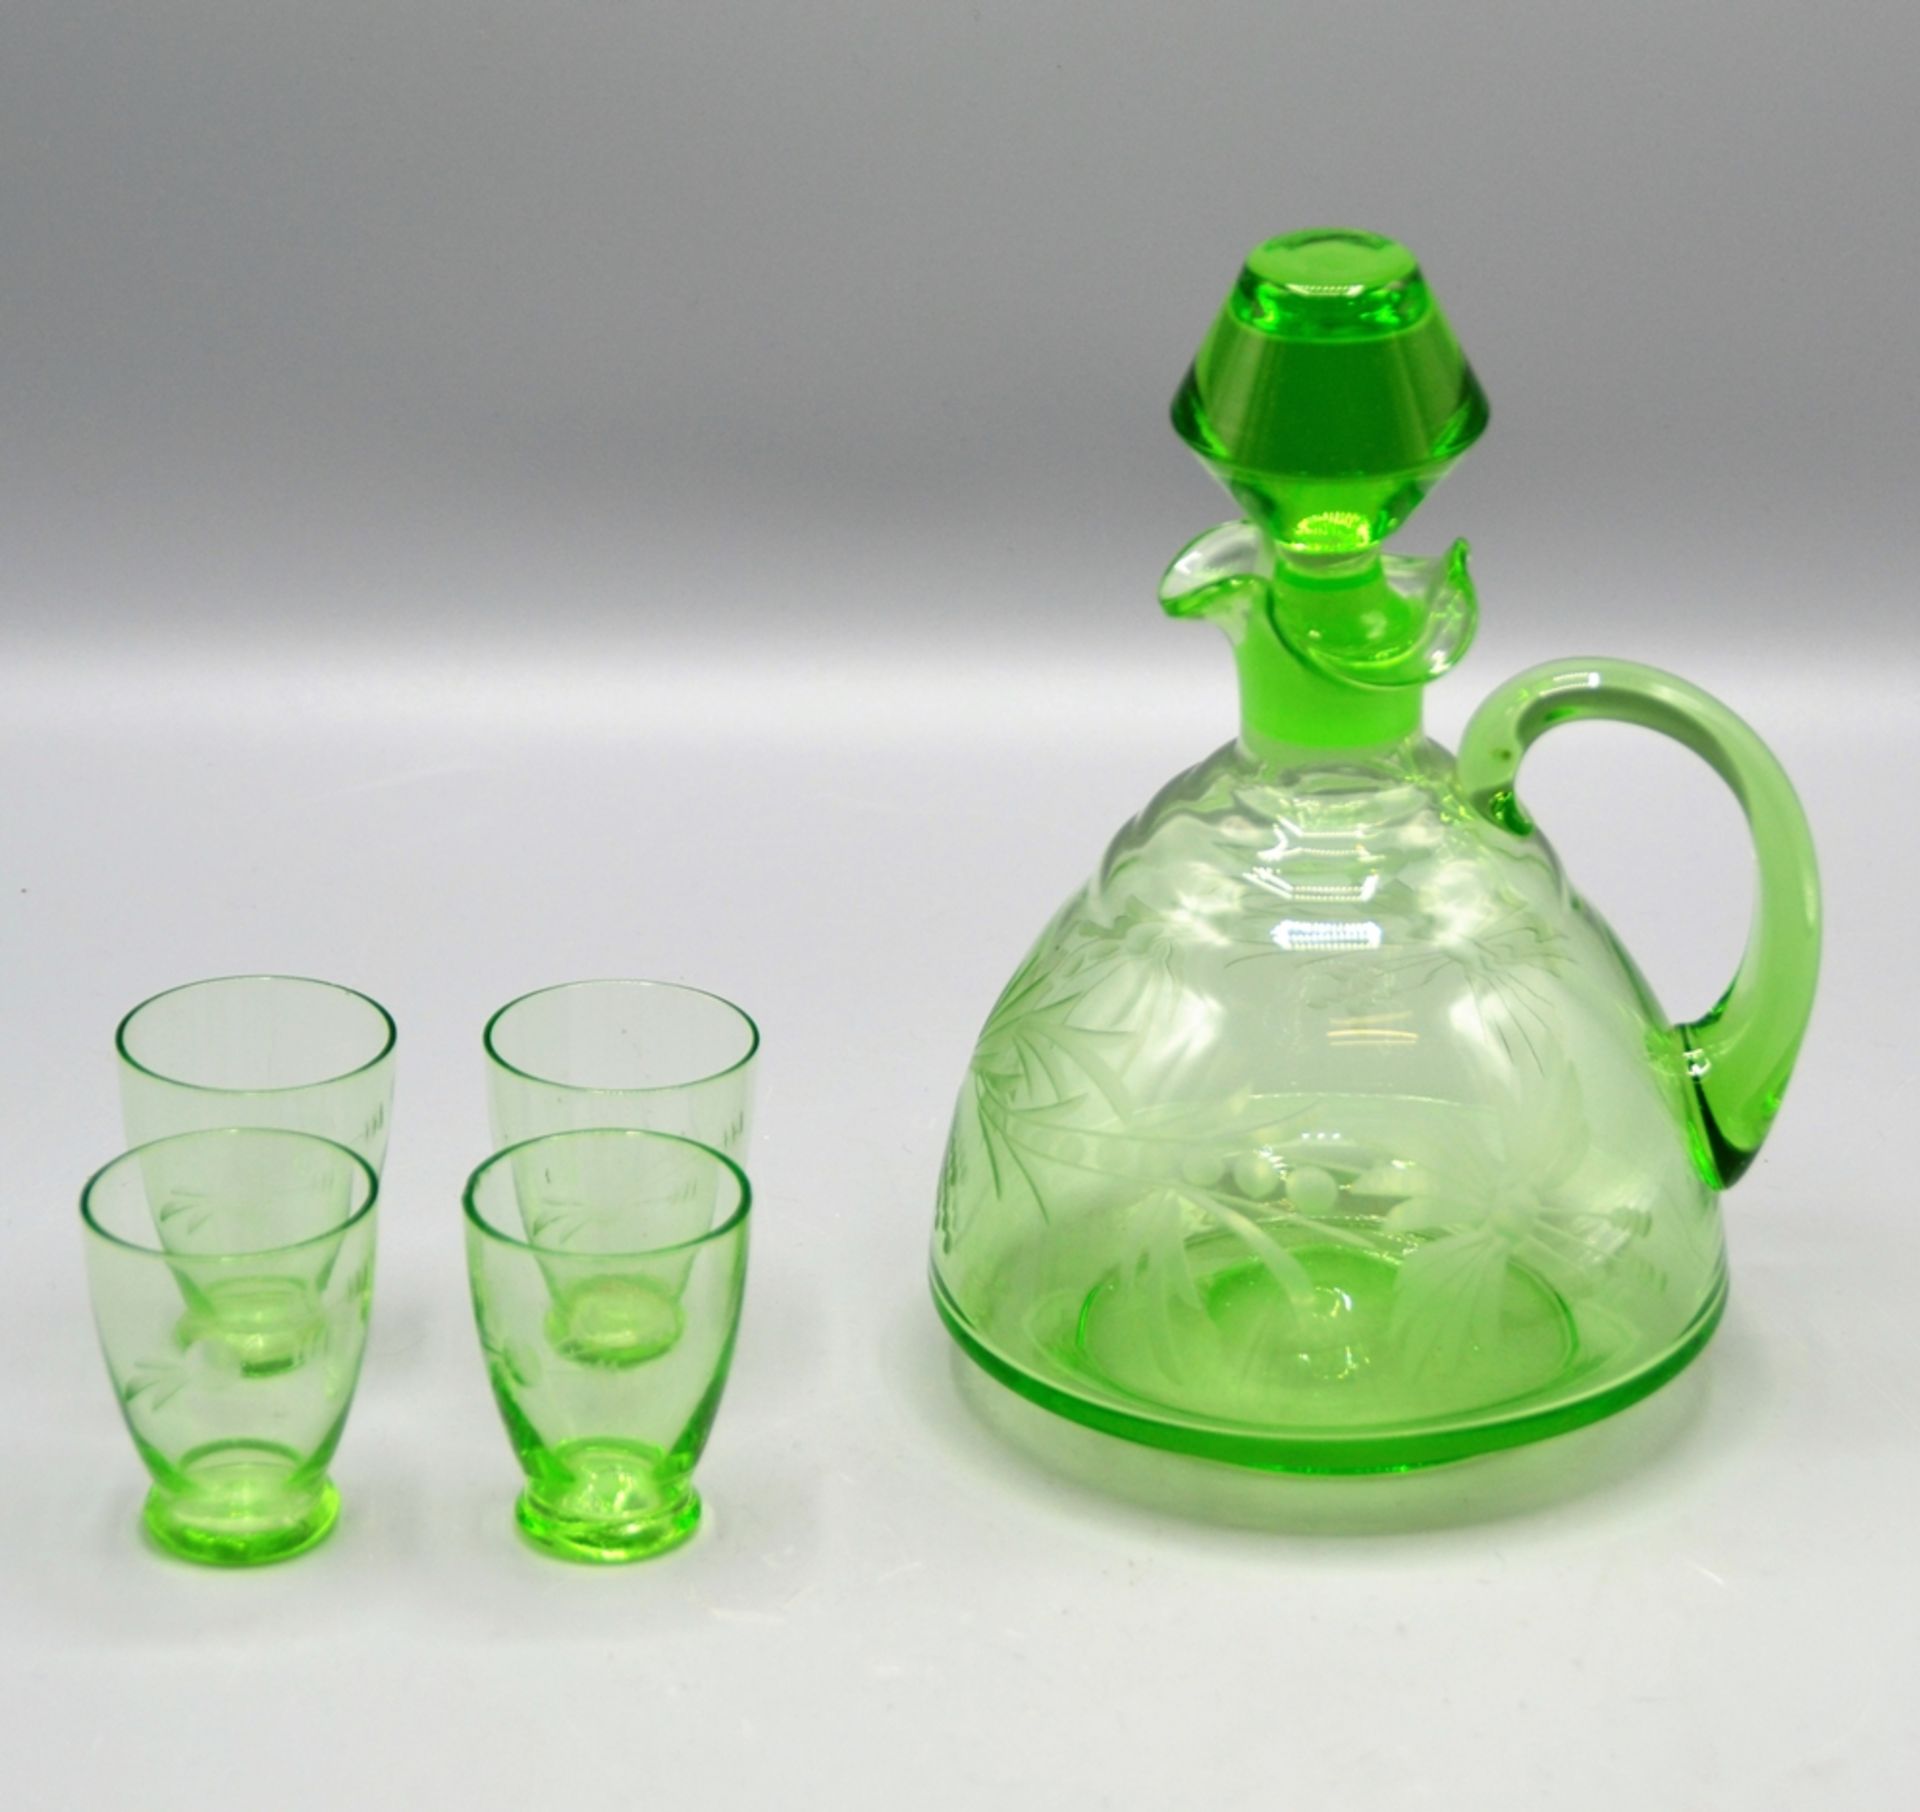 Uranglas Likör Schnaps Set Karaffe mit 4 Gläser, mundgeblasen, 1 Glas mit Bestossung am oberen Rand